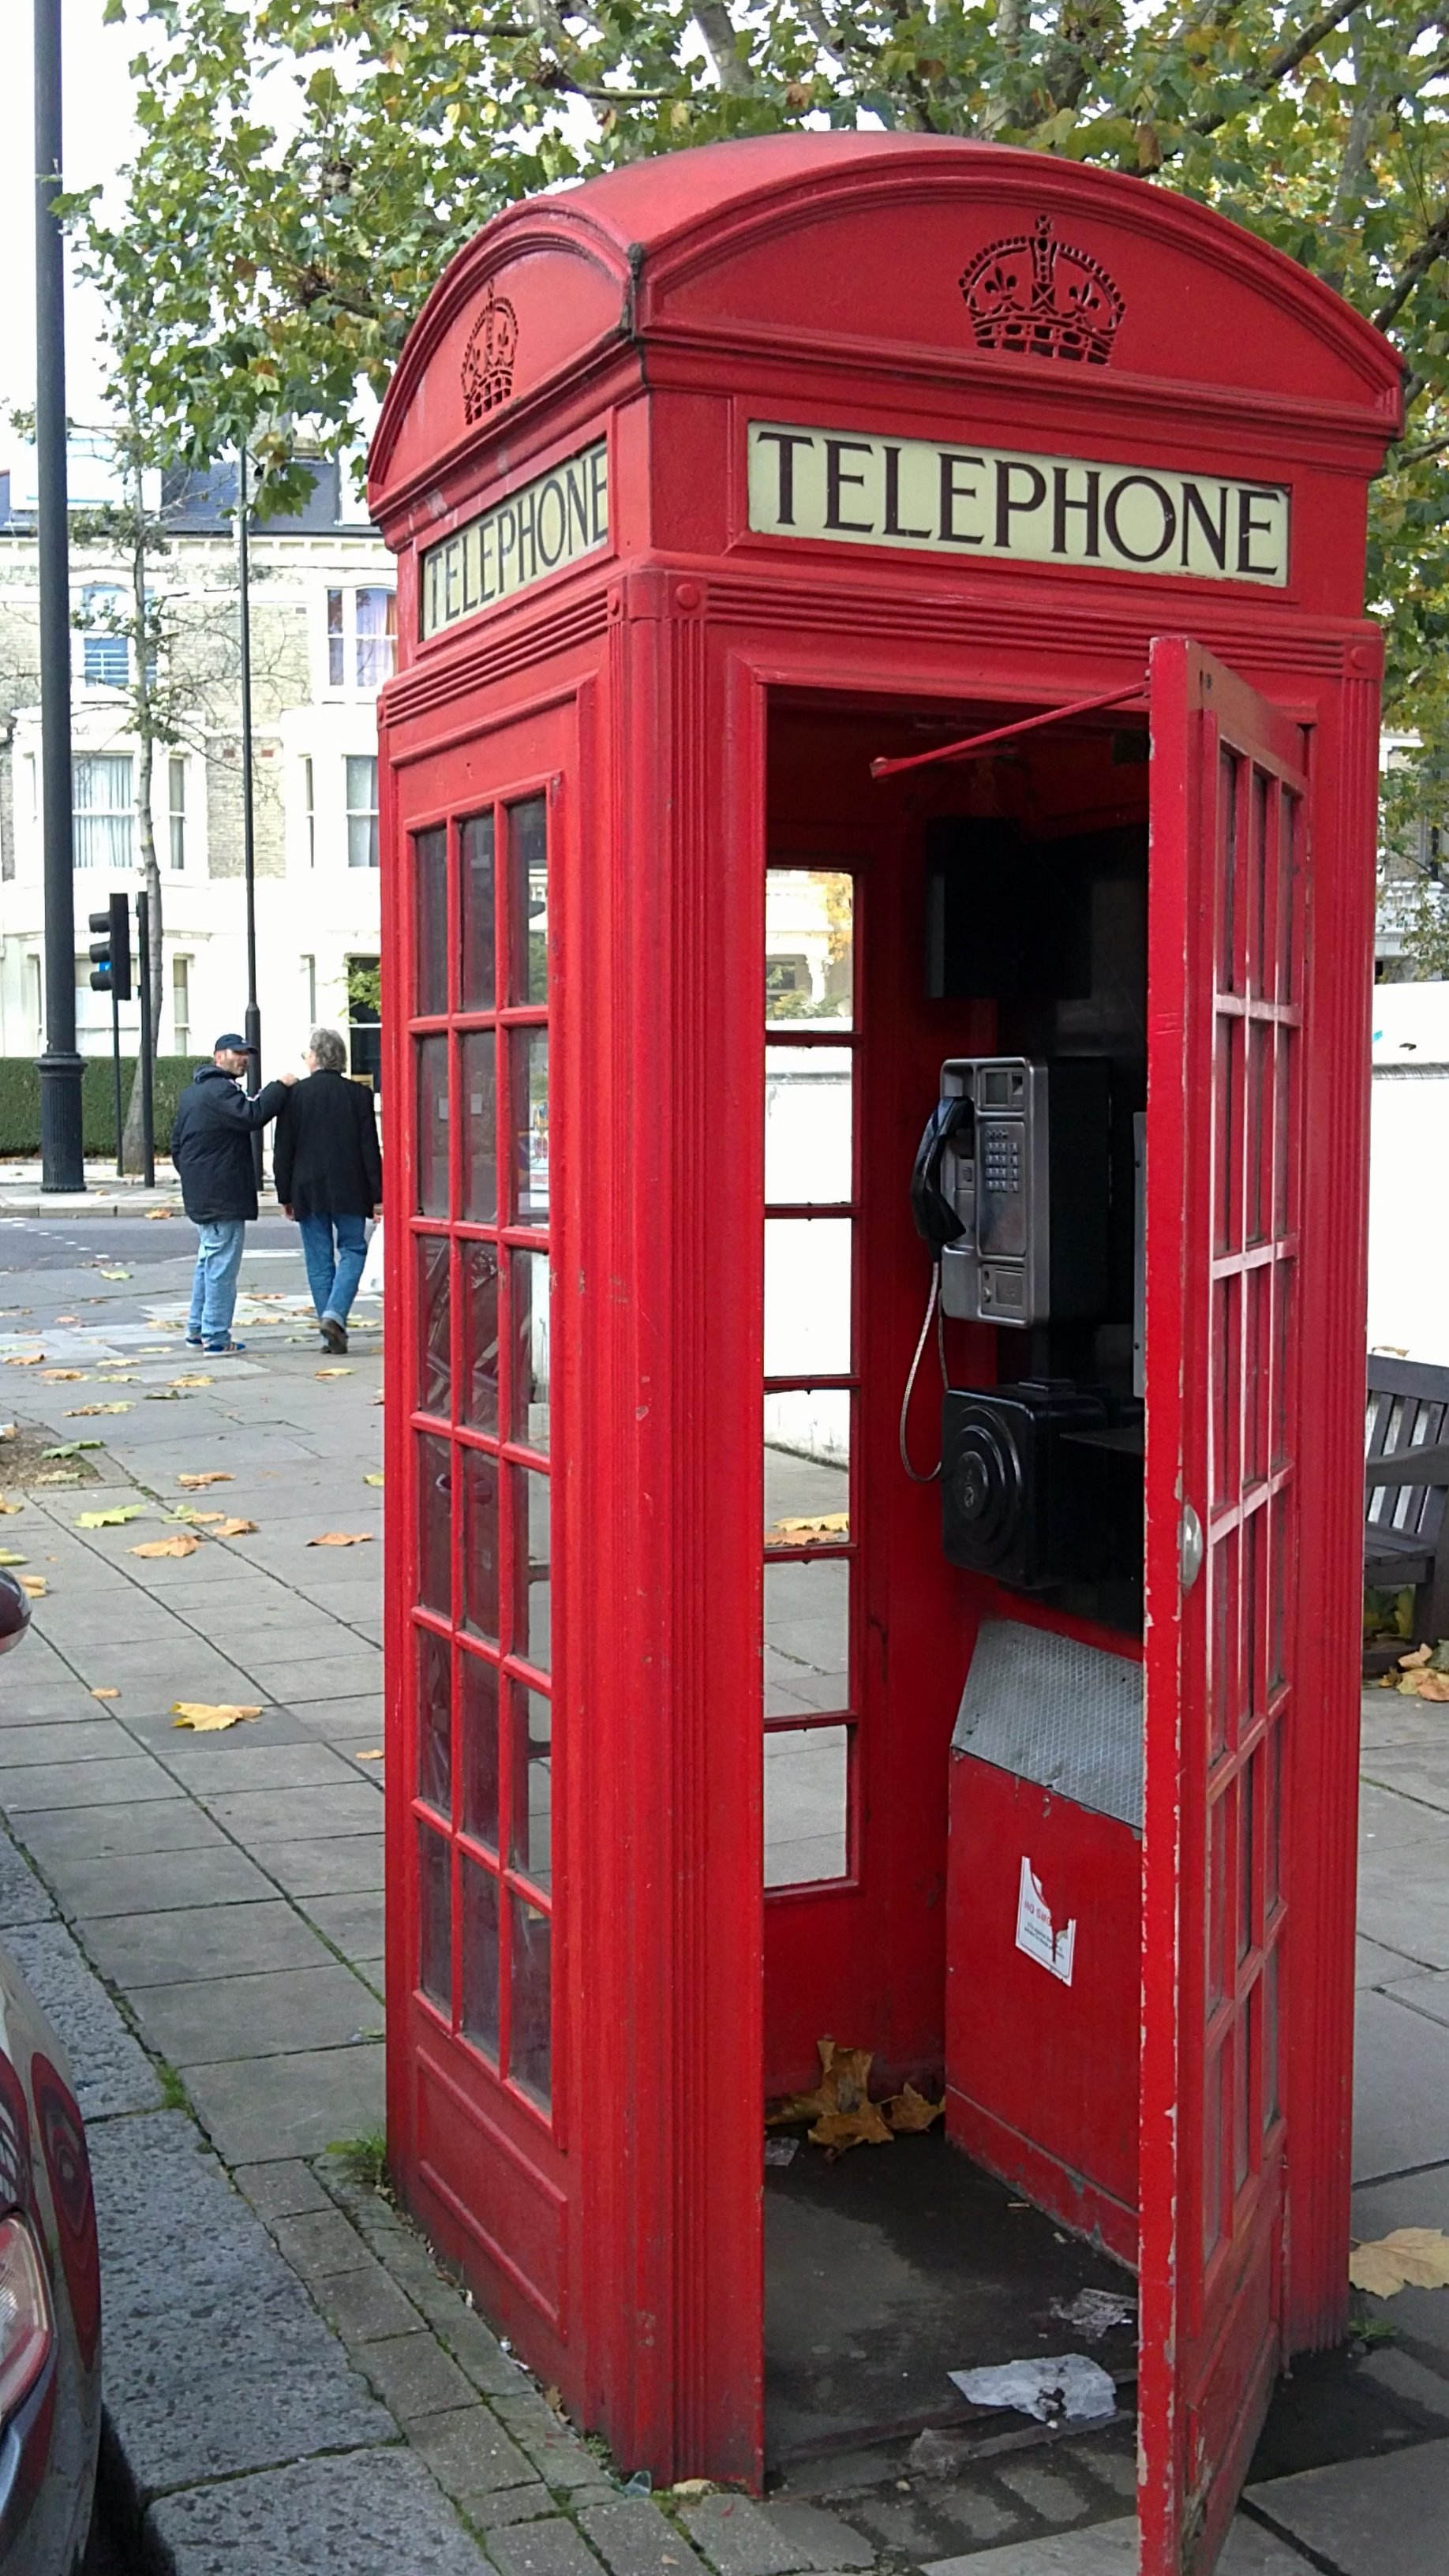 British phone booth | Spring Lake, NJ | Spring Lake | Pinterest ...